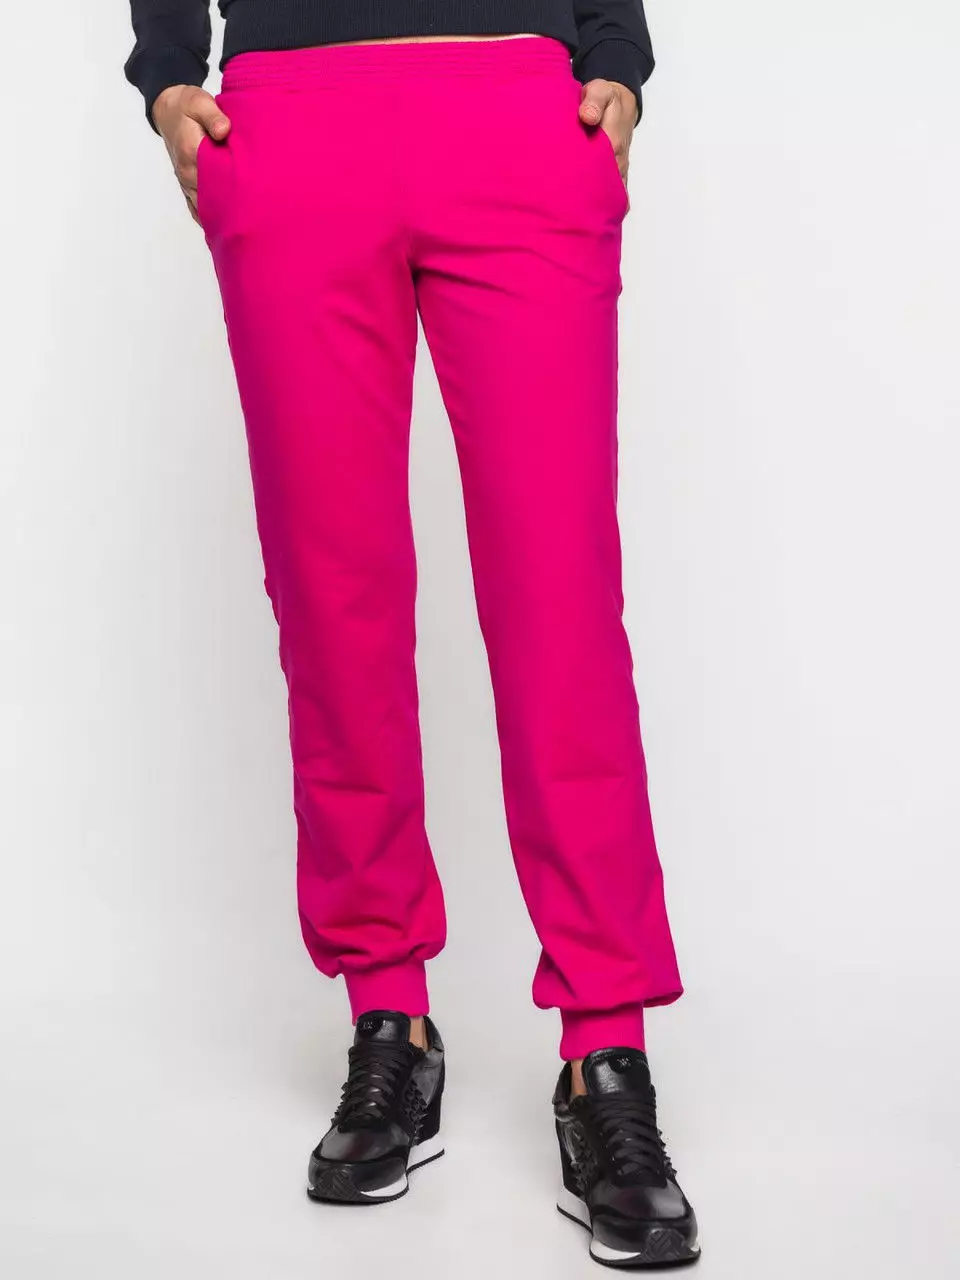 Modne hlače 2021: Ženski elegantni modeli, modni trendovi 917_293